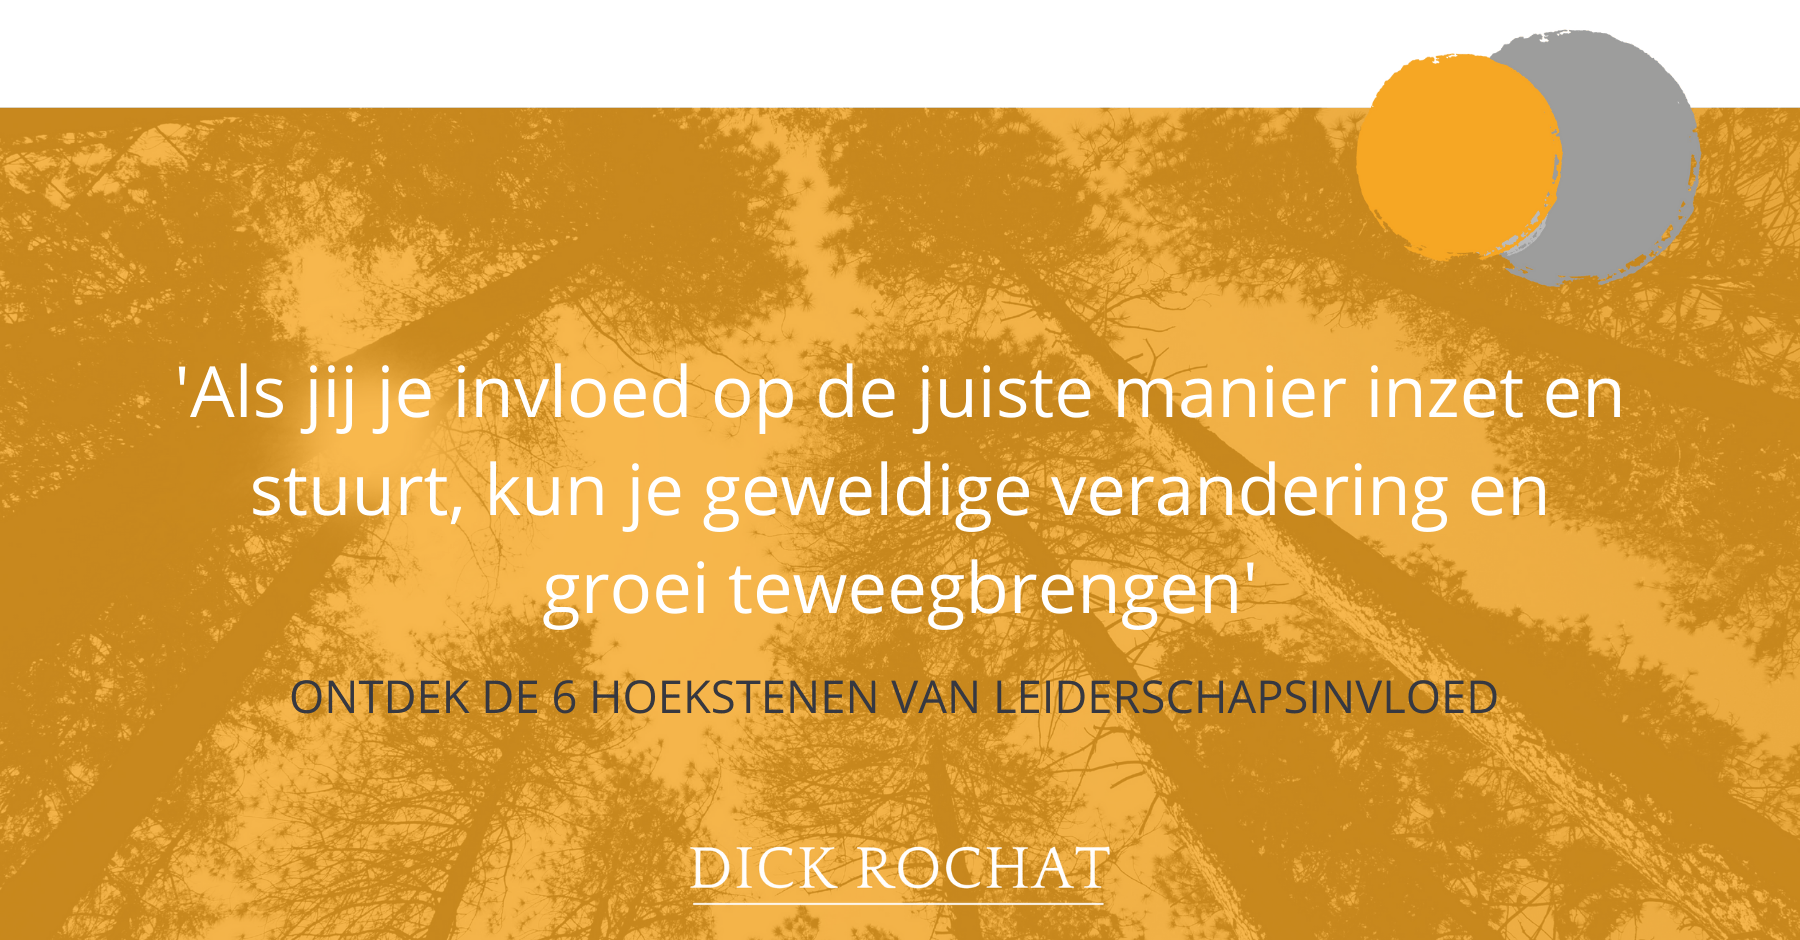 Dick Rochat - 6 hoekstenen van leiderschapsinvloed invloed in leiderschap gedragsverandering teamleden managers managementteam - leiderschaps coaching training expert Utrecht Gelderland Noord-Brabant Limburg